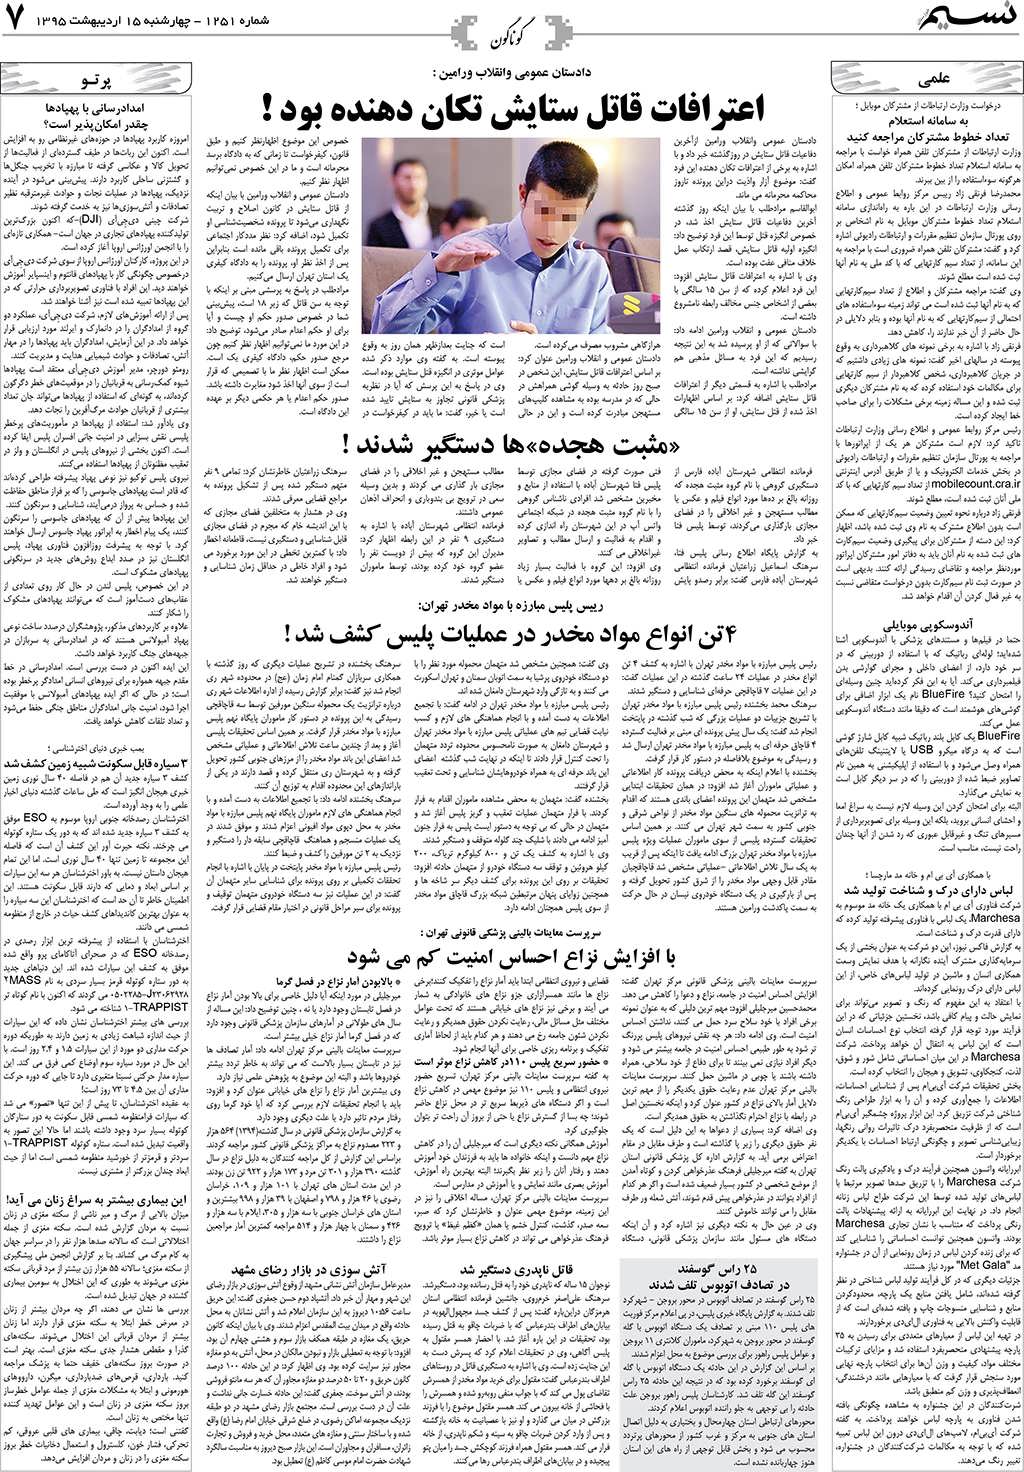 صفحه گوناگون روزنامه نسیم شماره 1251